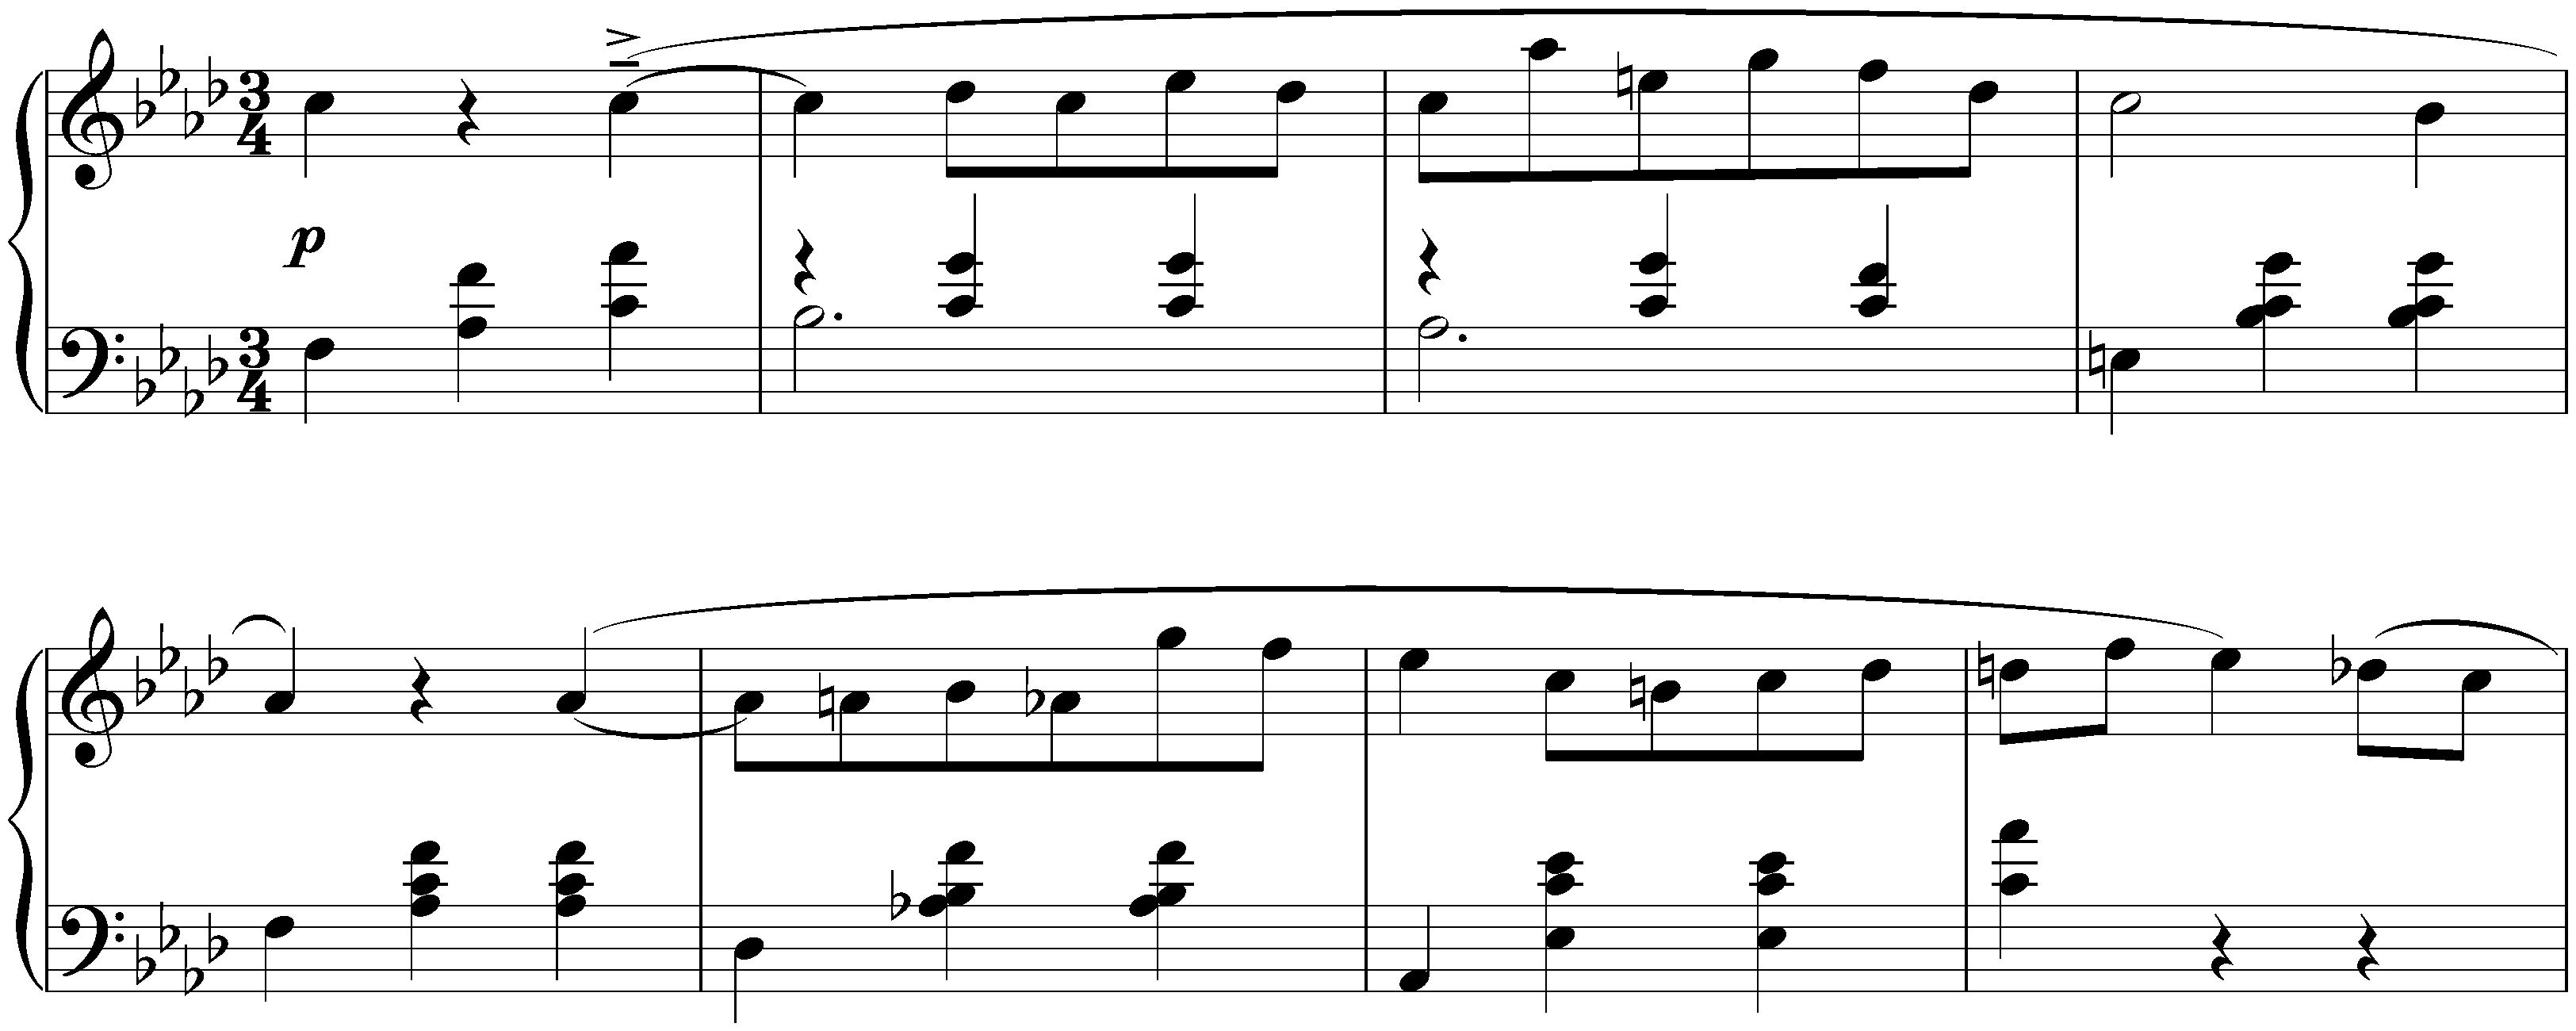 Valse in F minor, op. 1